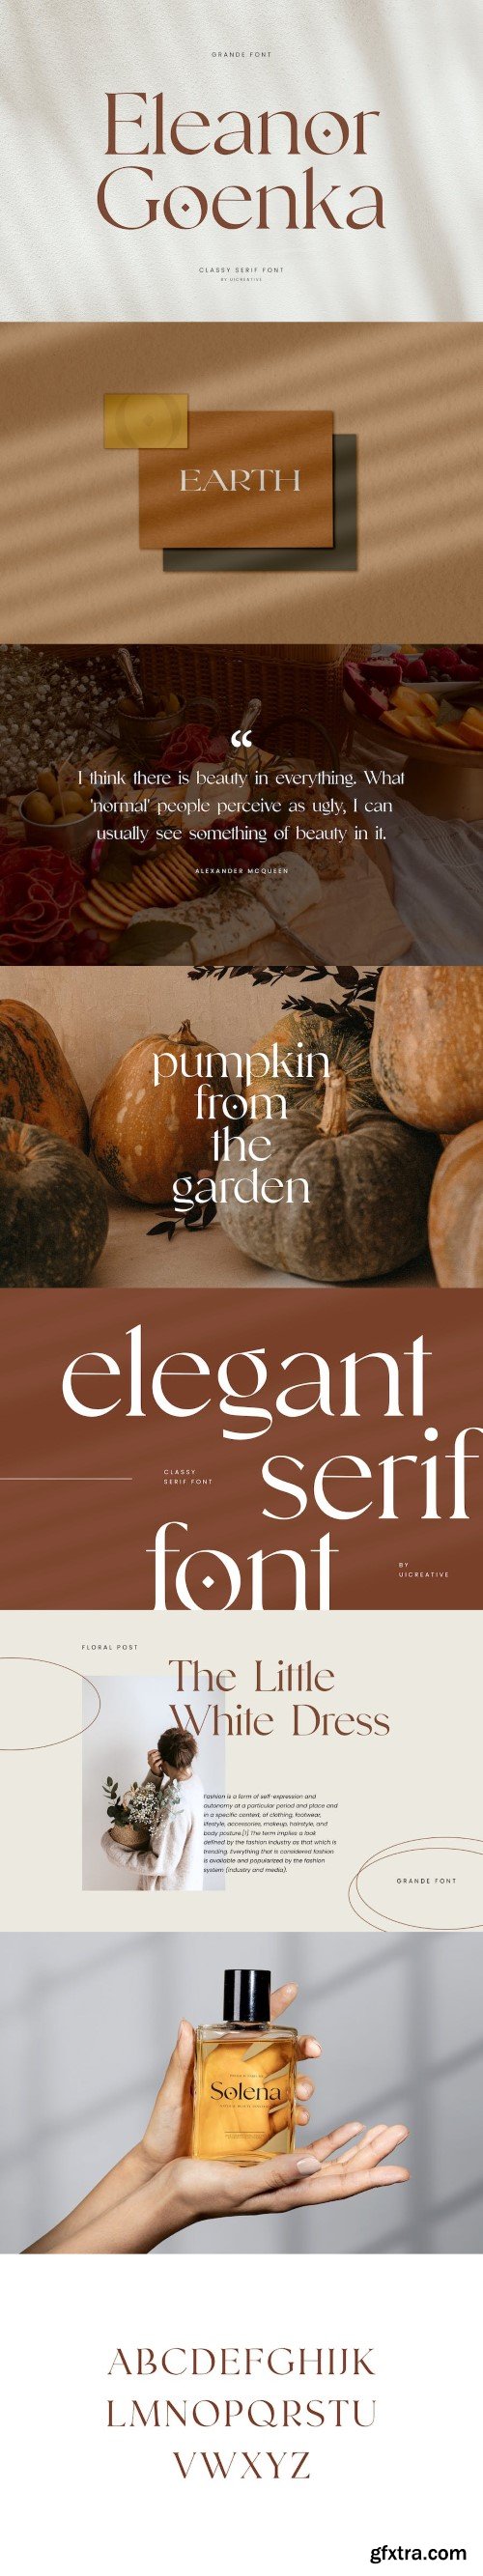 Eleanor Goenka Classic Serif Font